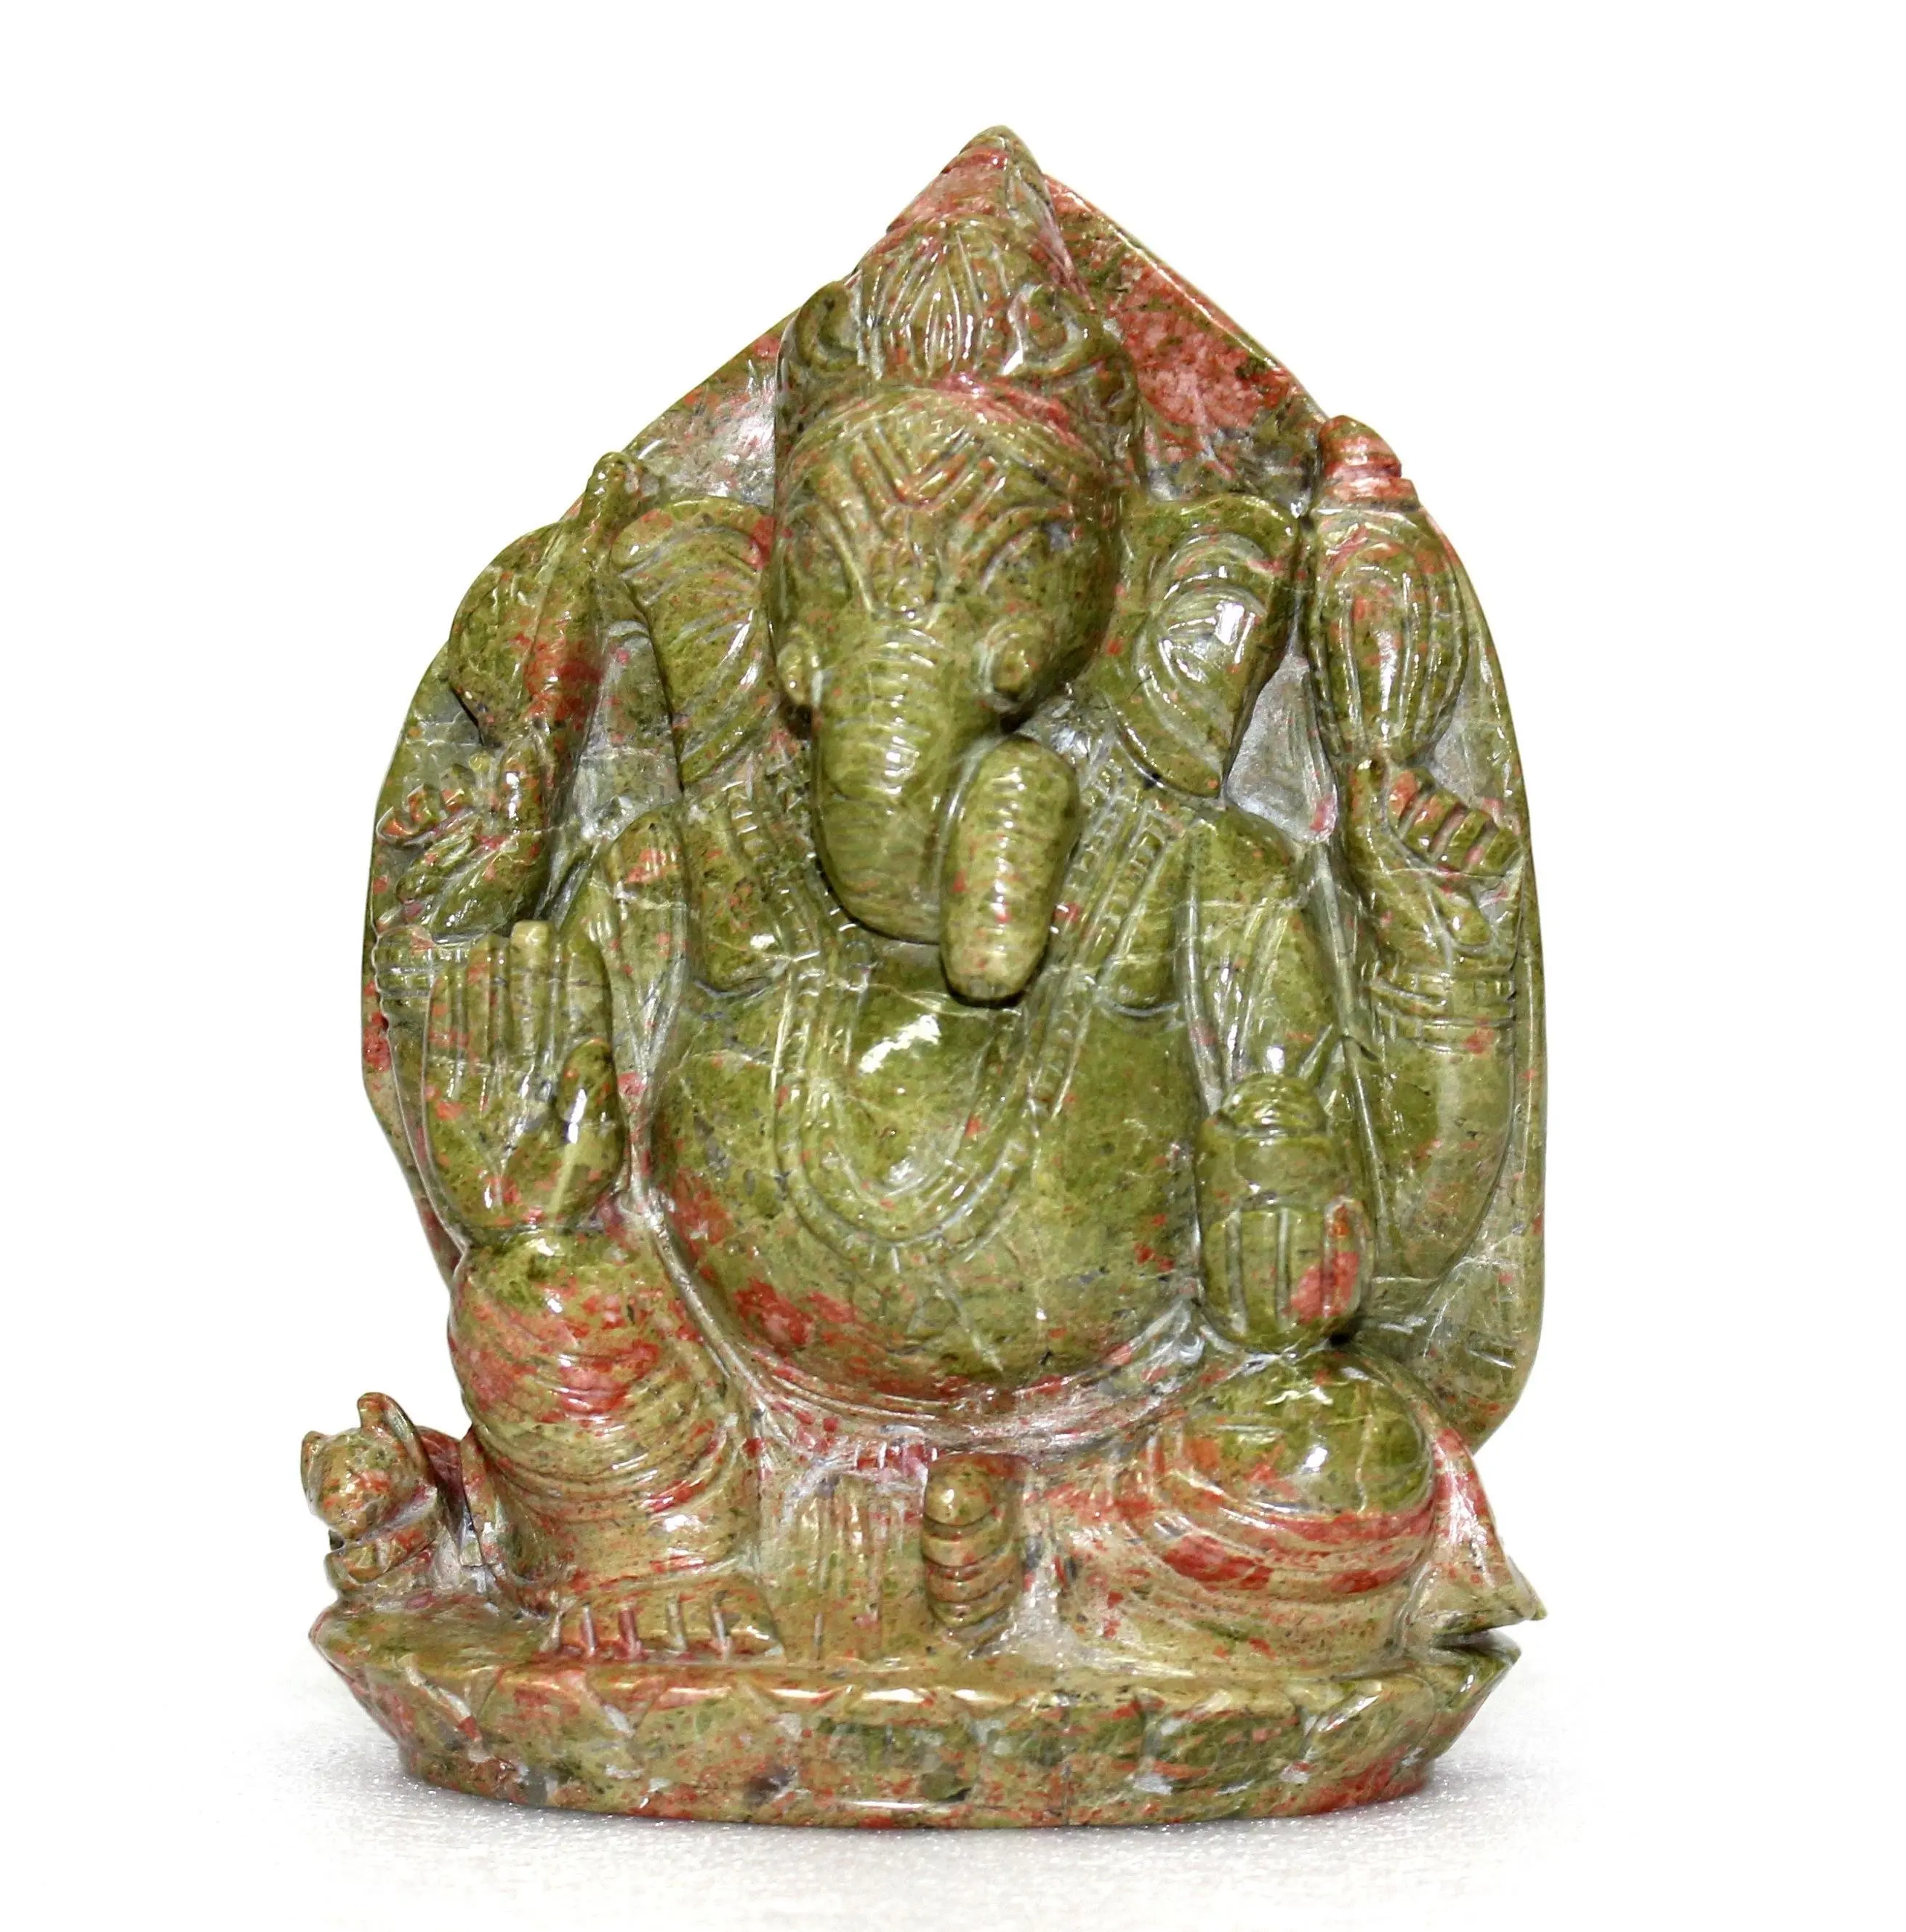 Kerajinan Tangan Unakite Ganesha patung batu permata kuarsa alami ukiran patung penyembuhan kristal buatan tangan batu Semi mulia kerajinan tangan